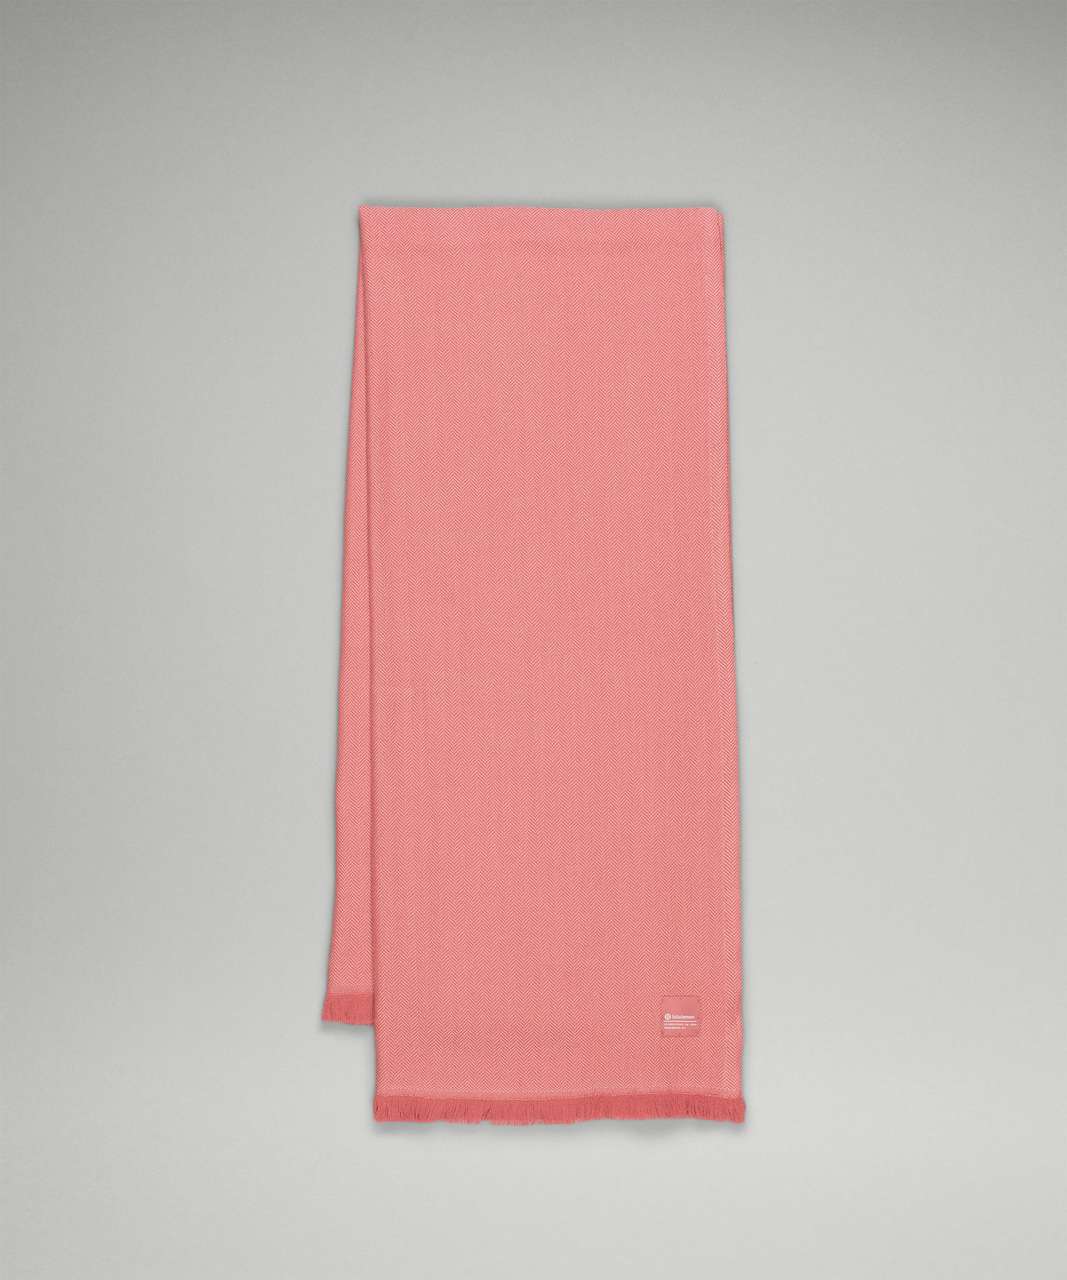 Lululemon Wool Blanket Scarf - Brier Rose / Pink Puff